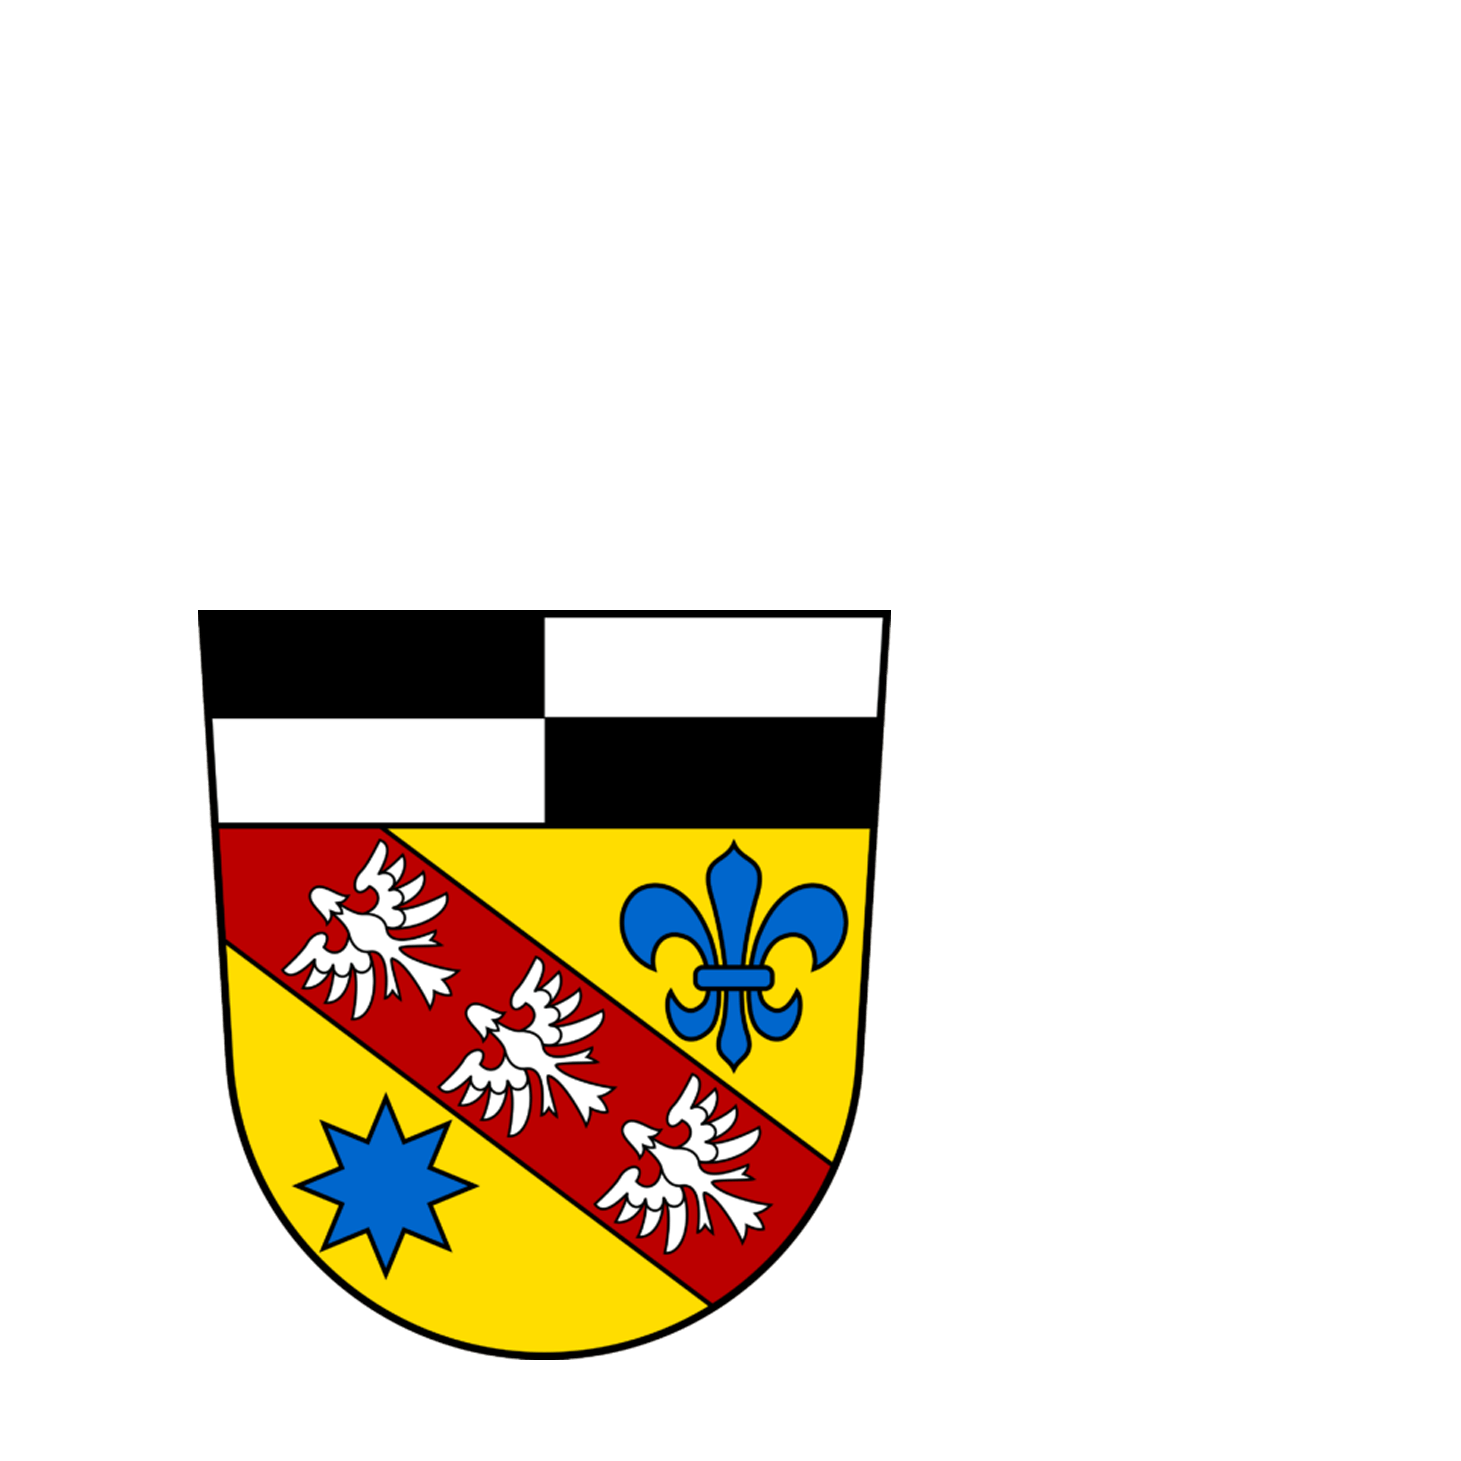 Wappen des Landkreis Saarlouis - © Landkreis Saarlouis